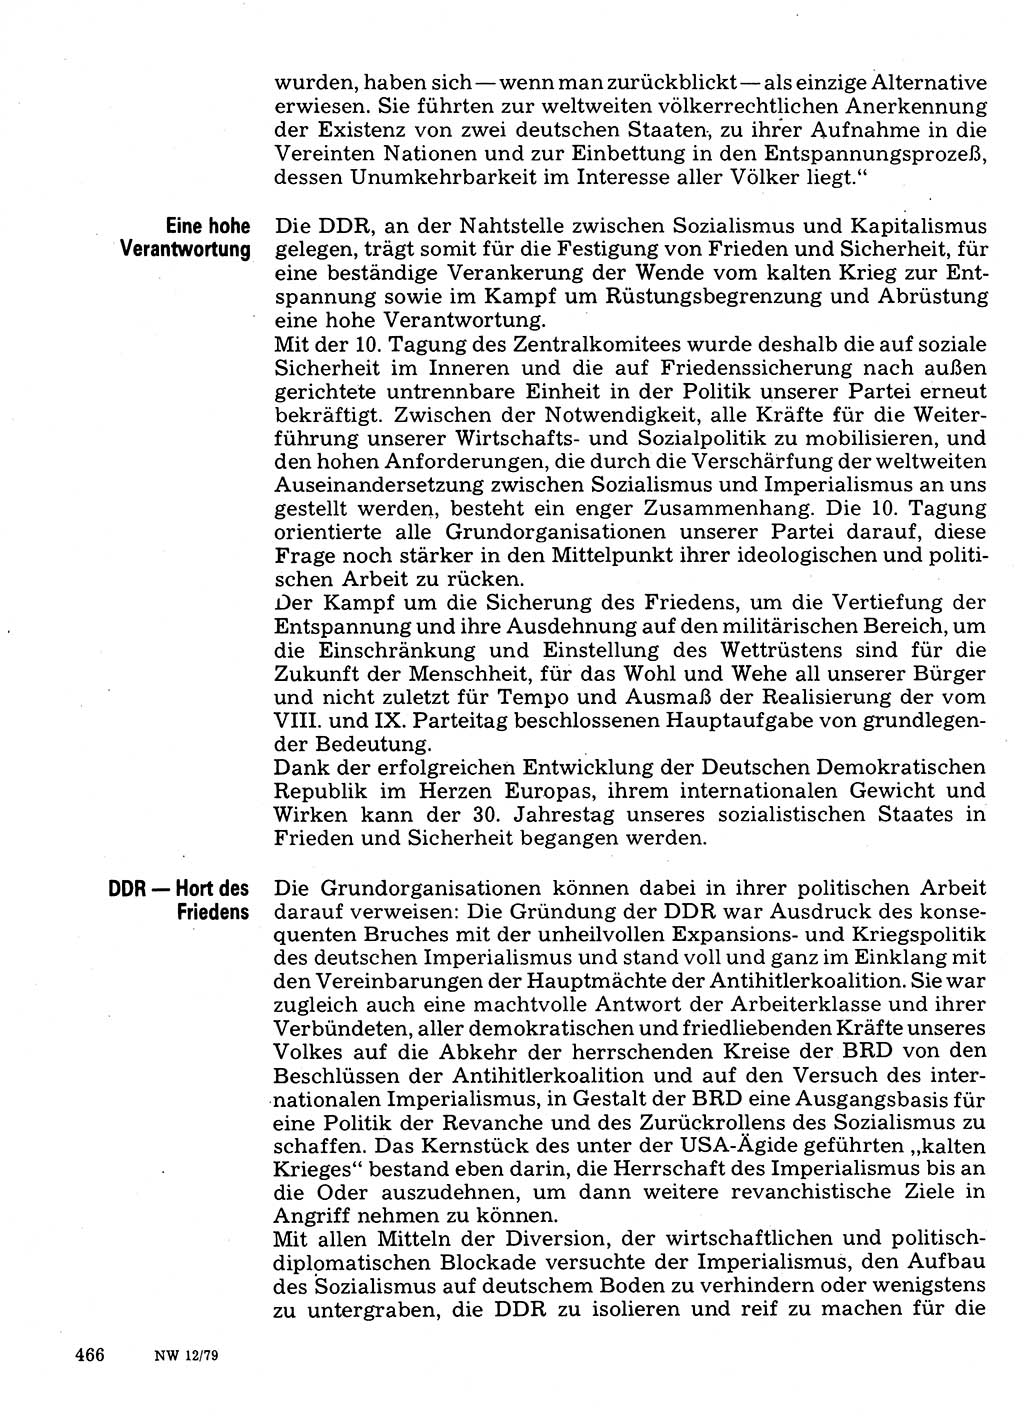 Neuer Weg (NW), Organ des Zentralkomitees (ZK) der SED (Sozialistische Einheitspartei Deutschlands) für Fragen des Parteilebens, 34. Jahrgang [Deutsche Demokratische Republik (DDR)] 1979, Seite 466 (NW ZK SED DDR 1979, S. 466)